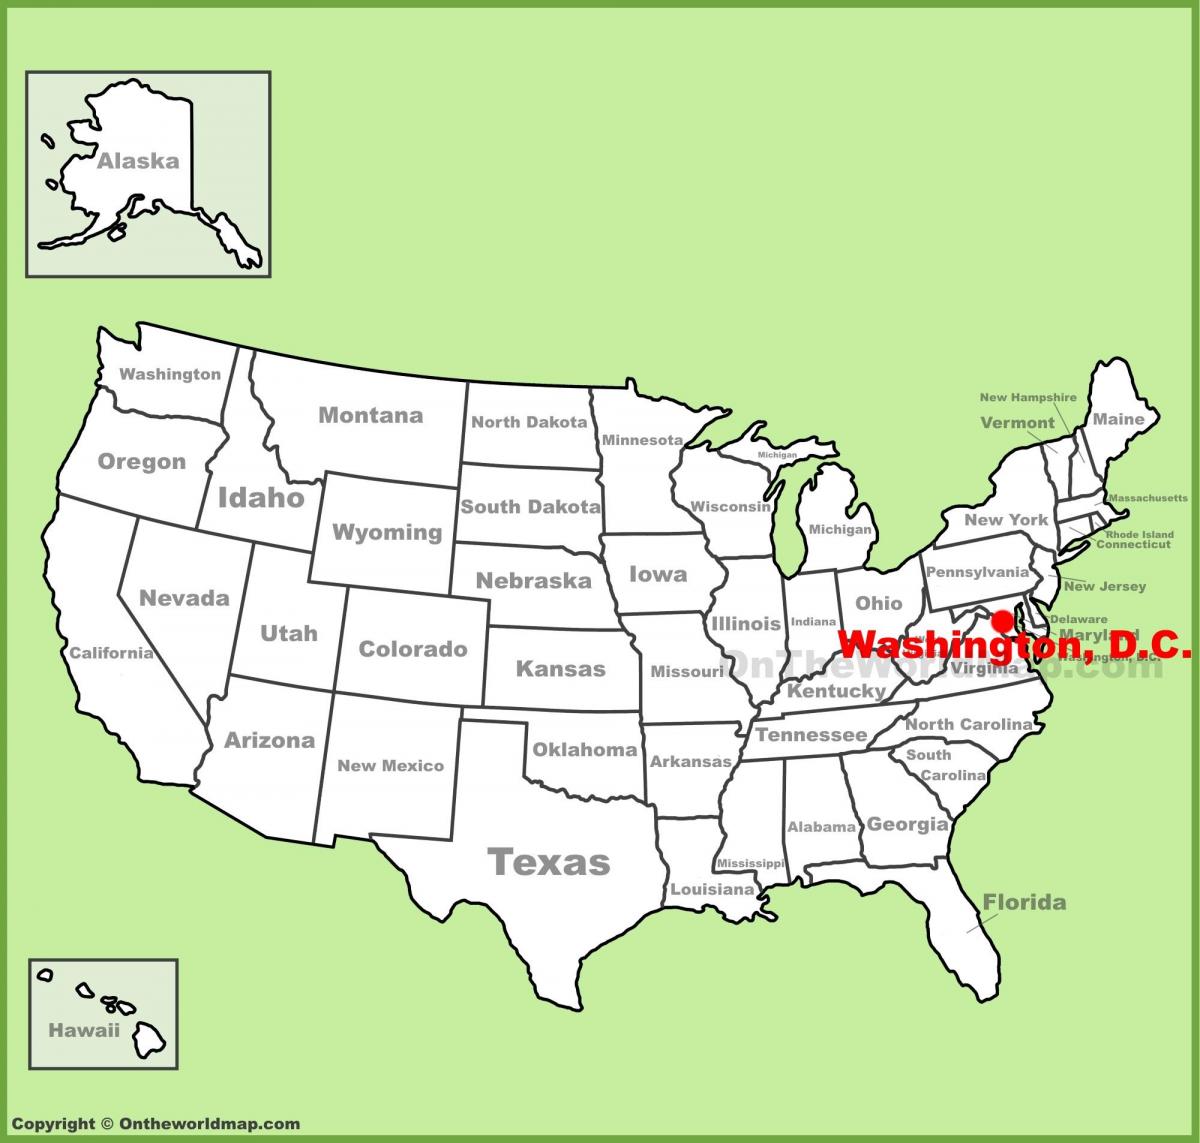 Washington, dc քարտեզի վրա ԱՄՆ-ի